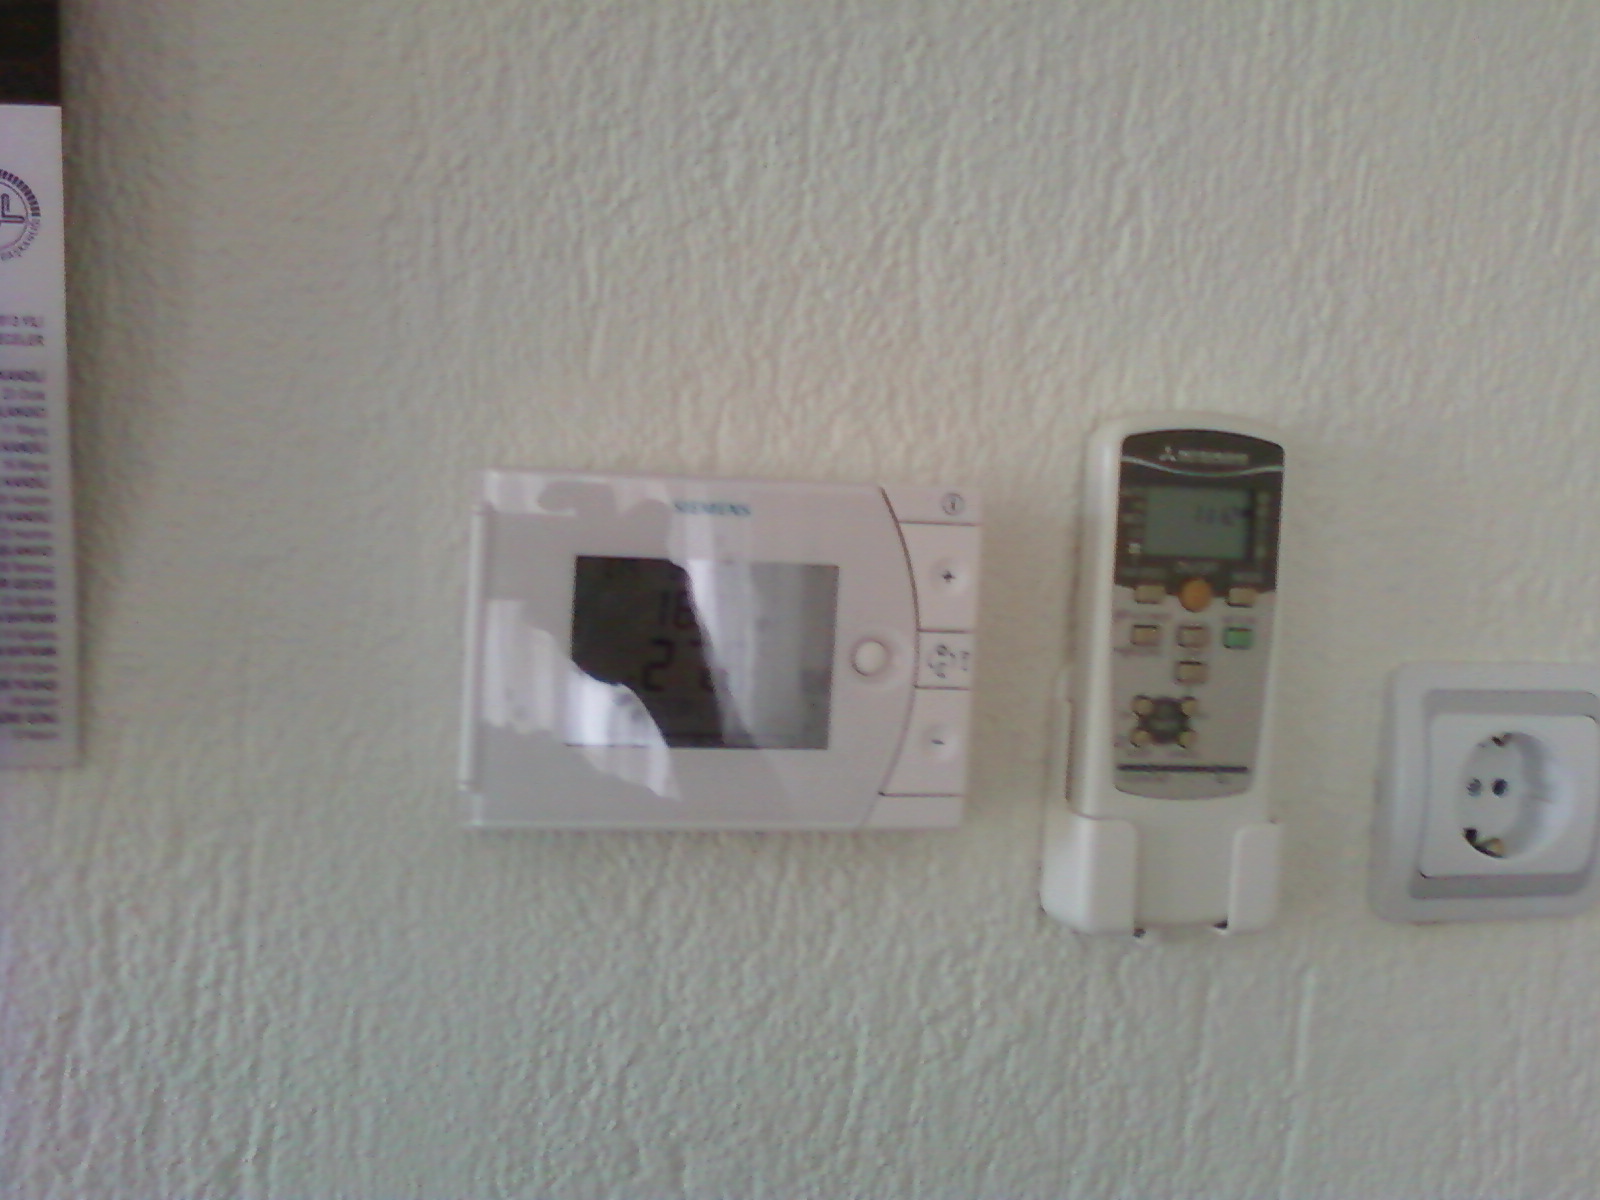  baymak duo tec için oda termostatı